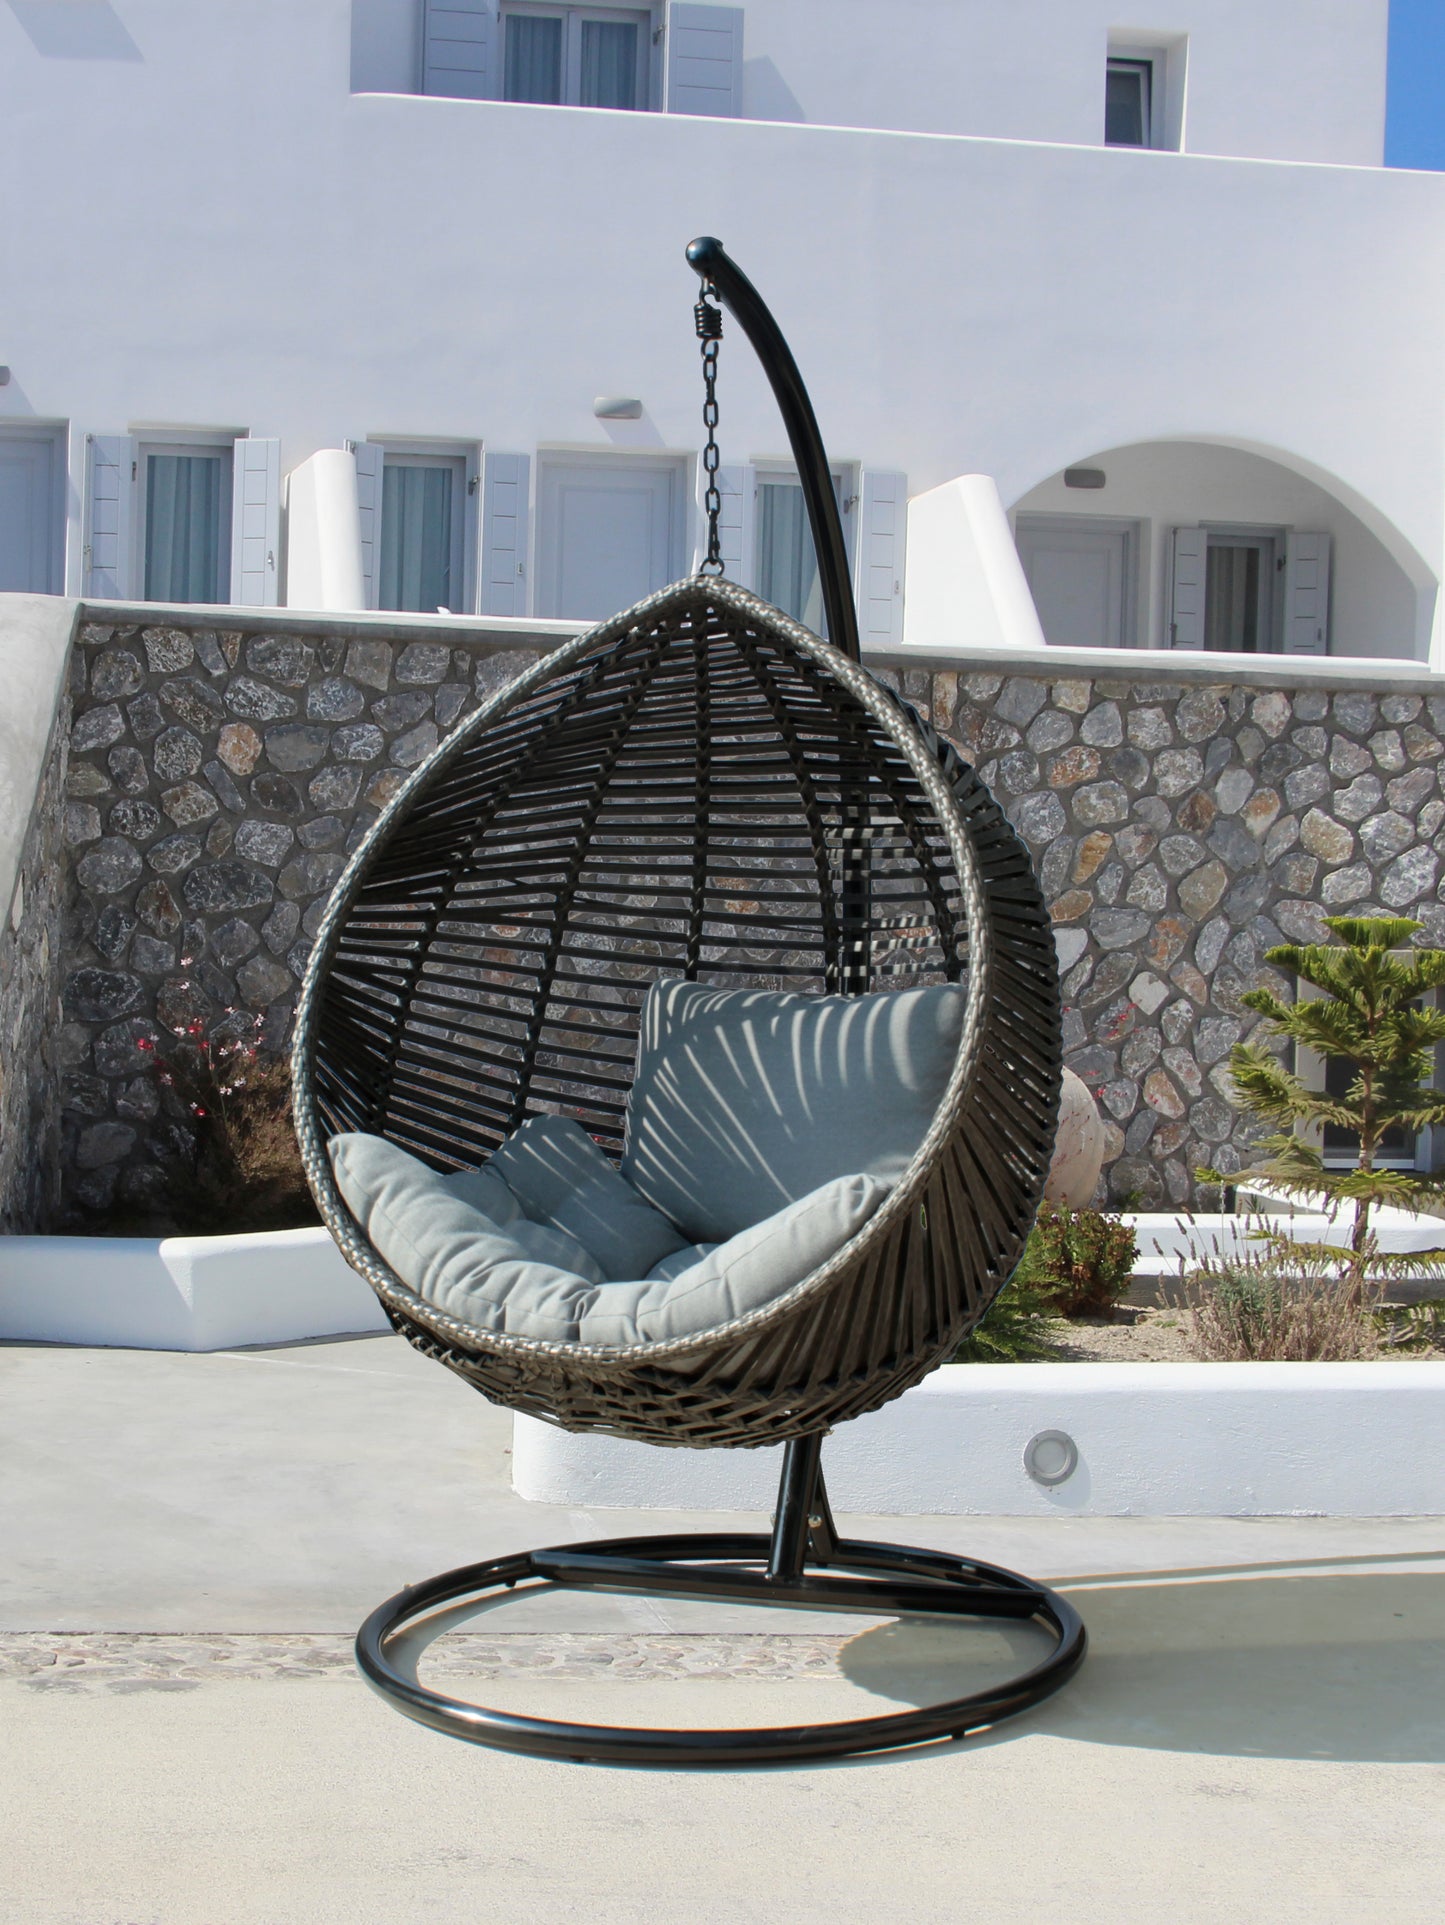 Outdoor AquaDrop Hanging Chair